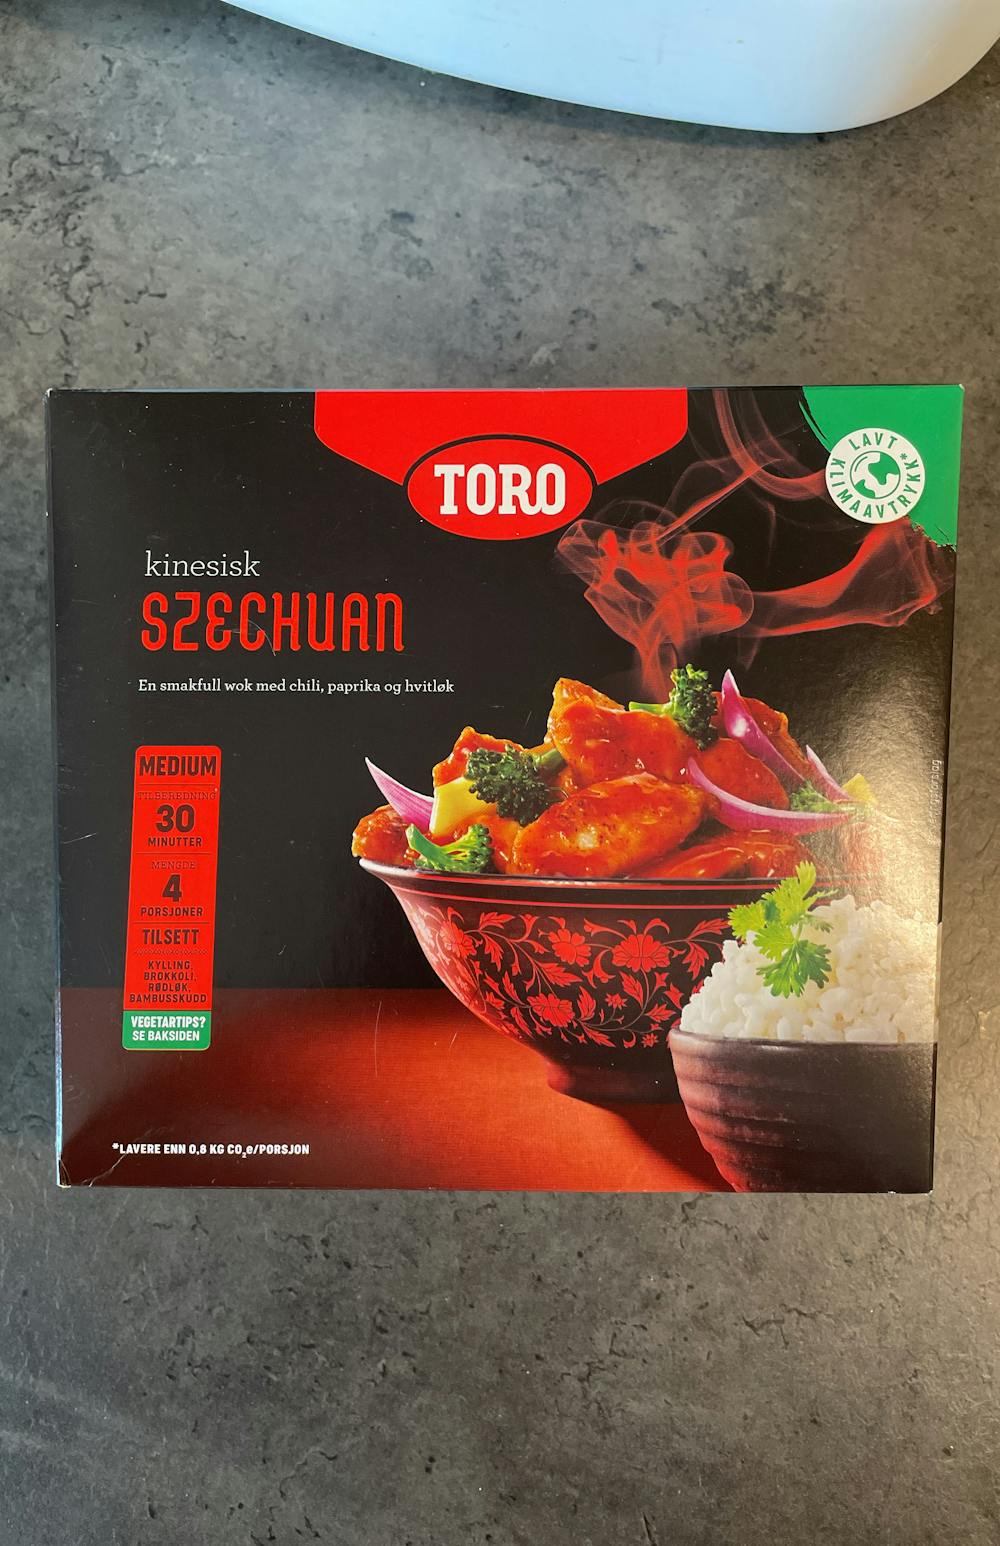 Kinesisk szechuan, Toro